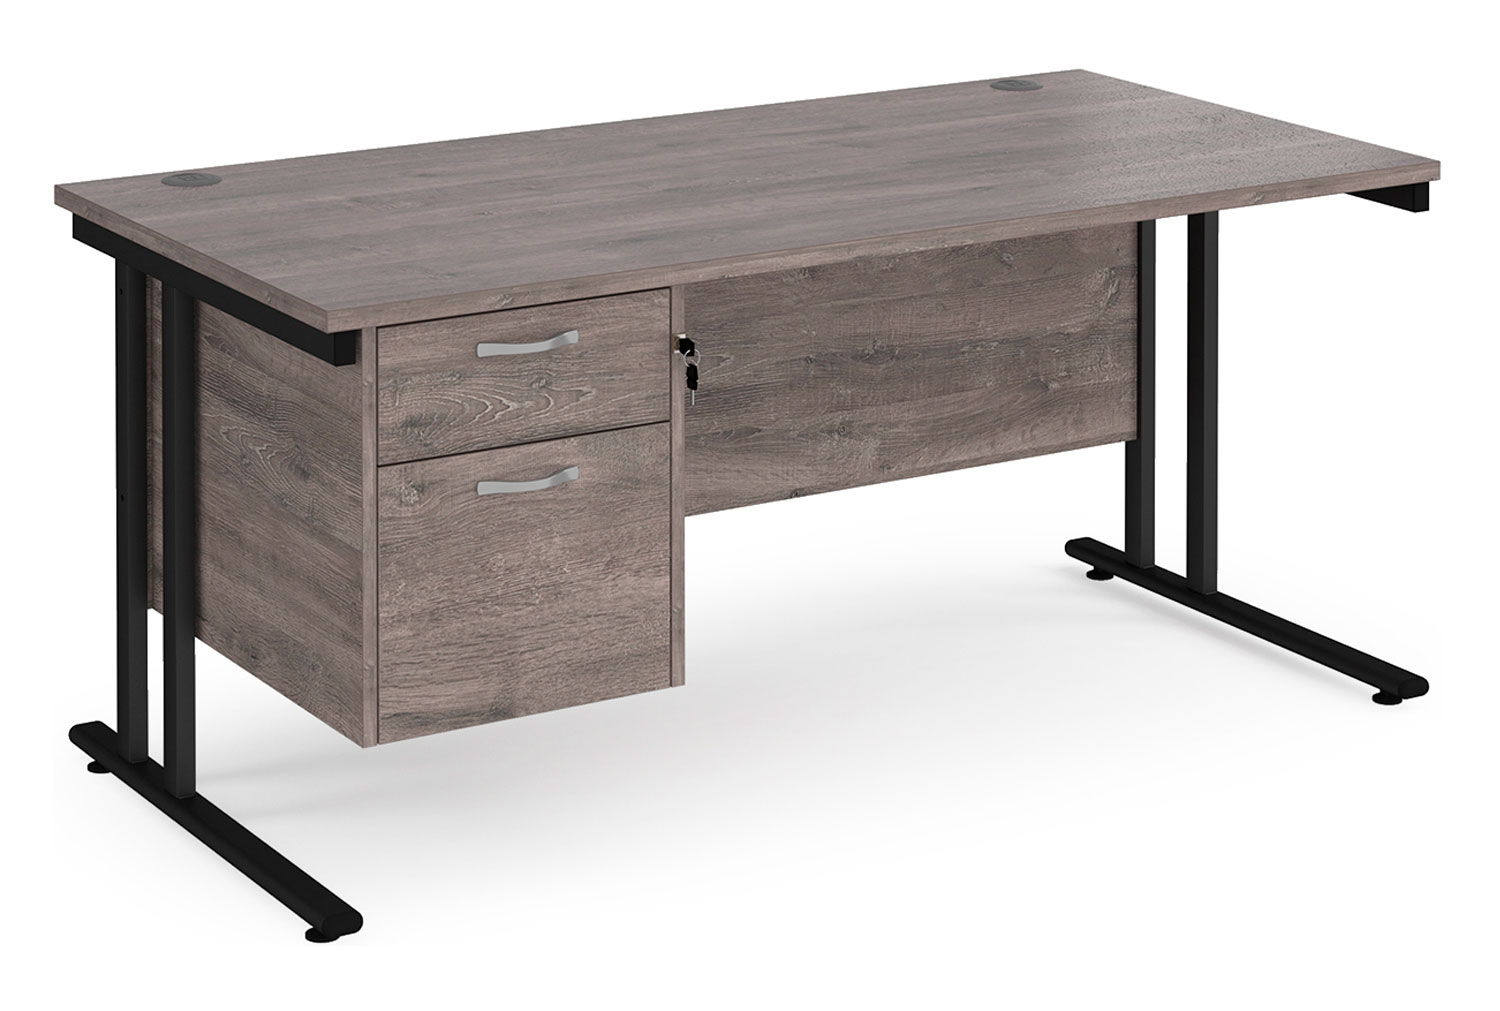 Value Line Deluxe C-Leg Rectangular Office Desk 2 Drawers (Black Legs), 160wx80dx73h (cm), Grey Oak